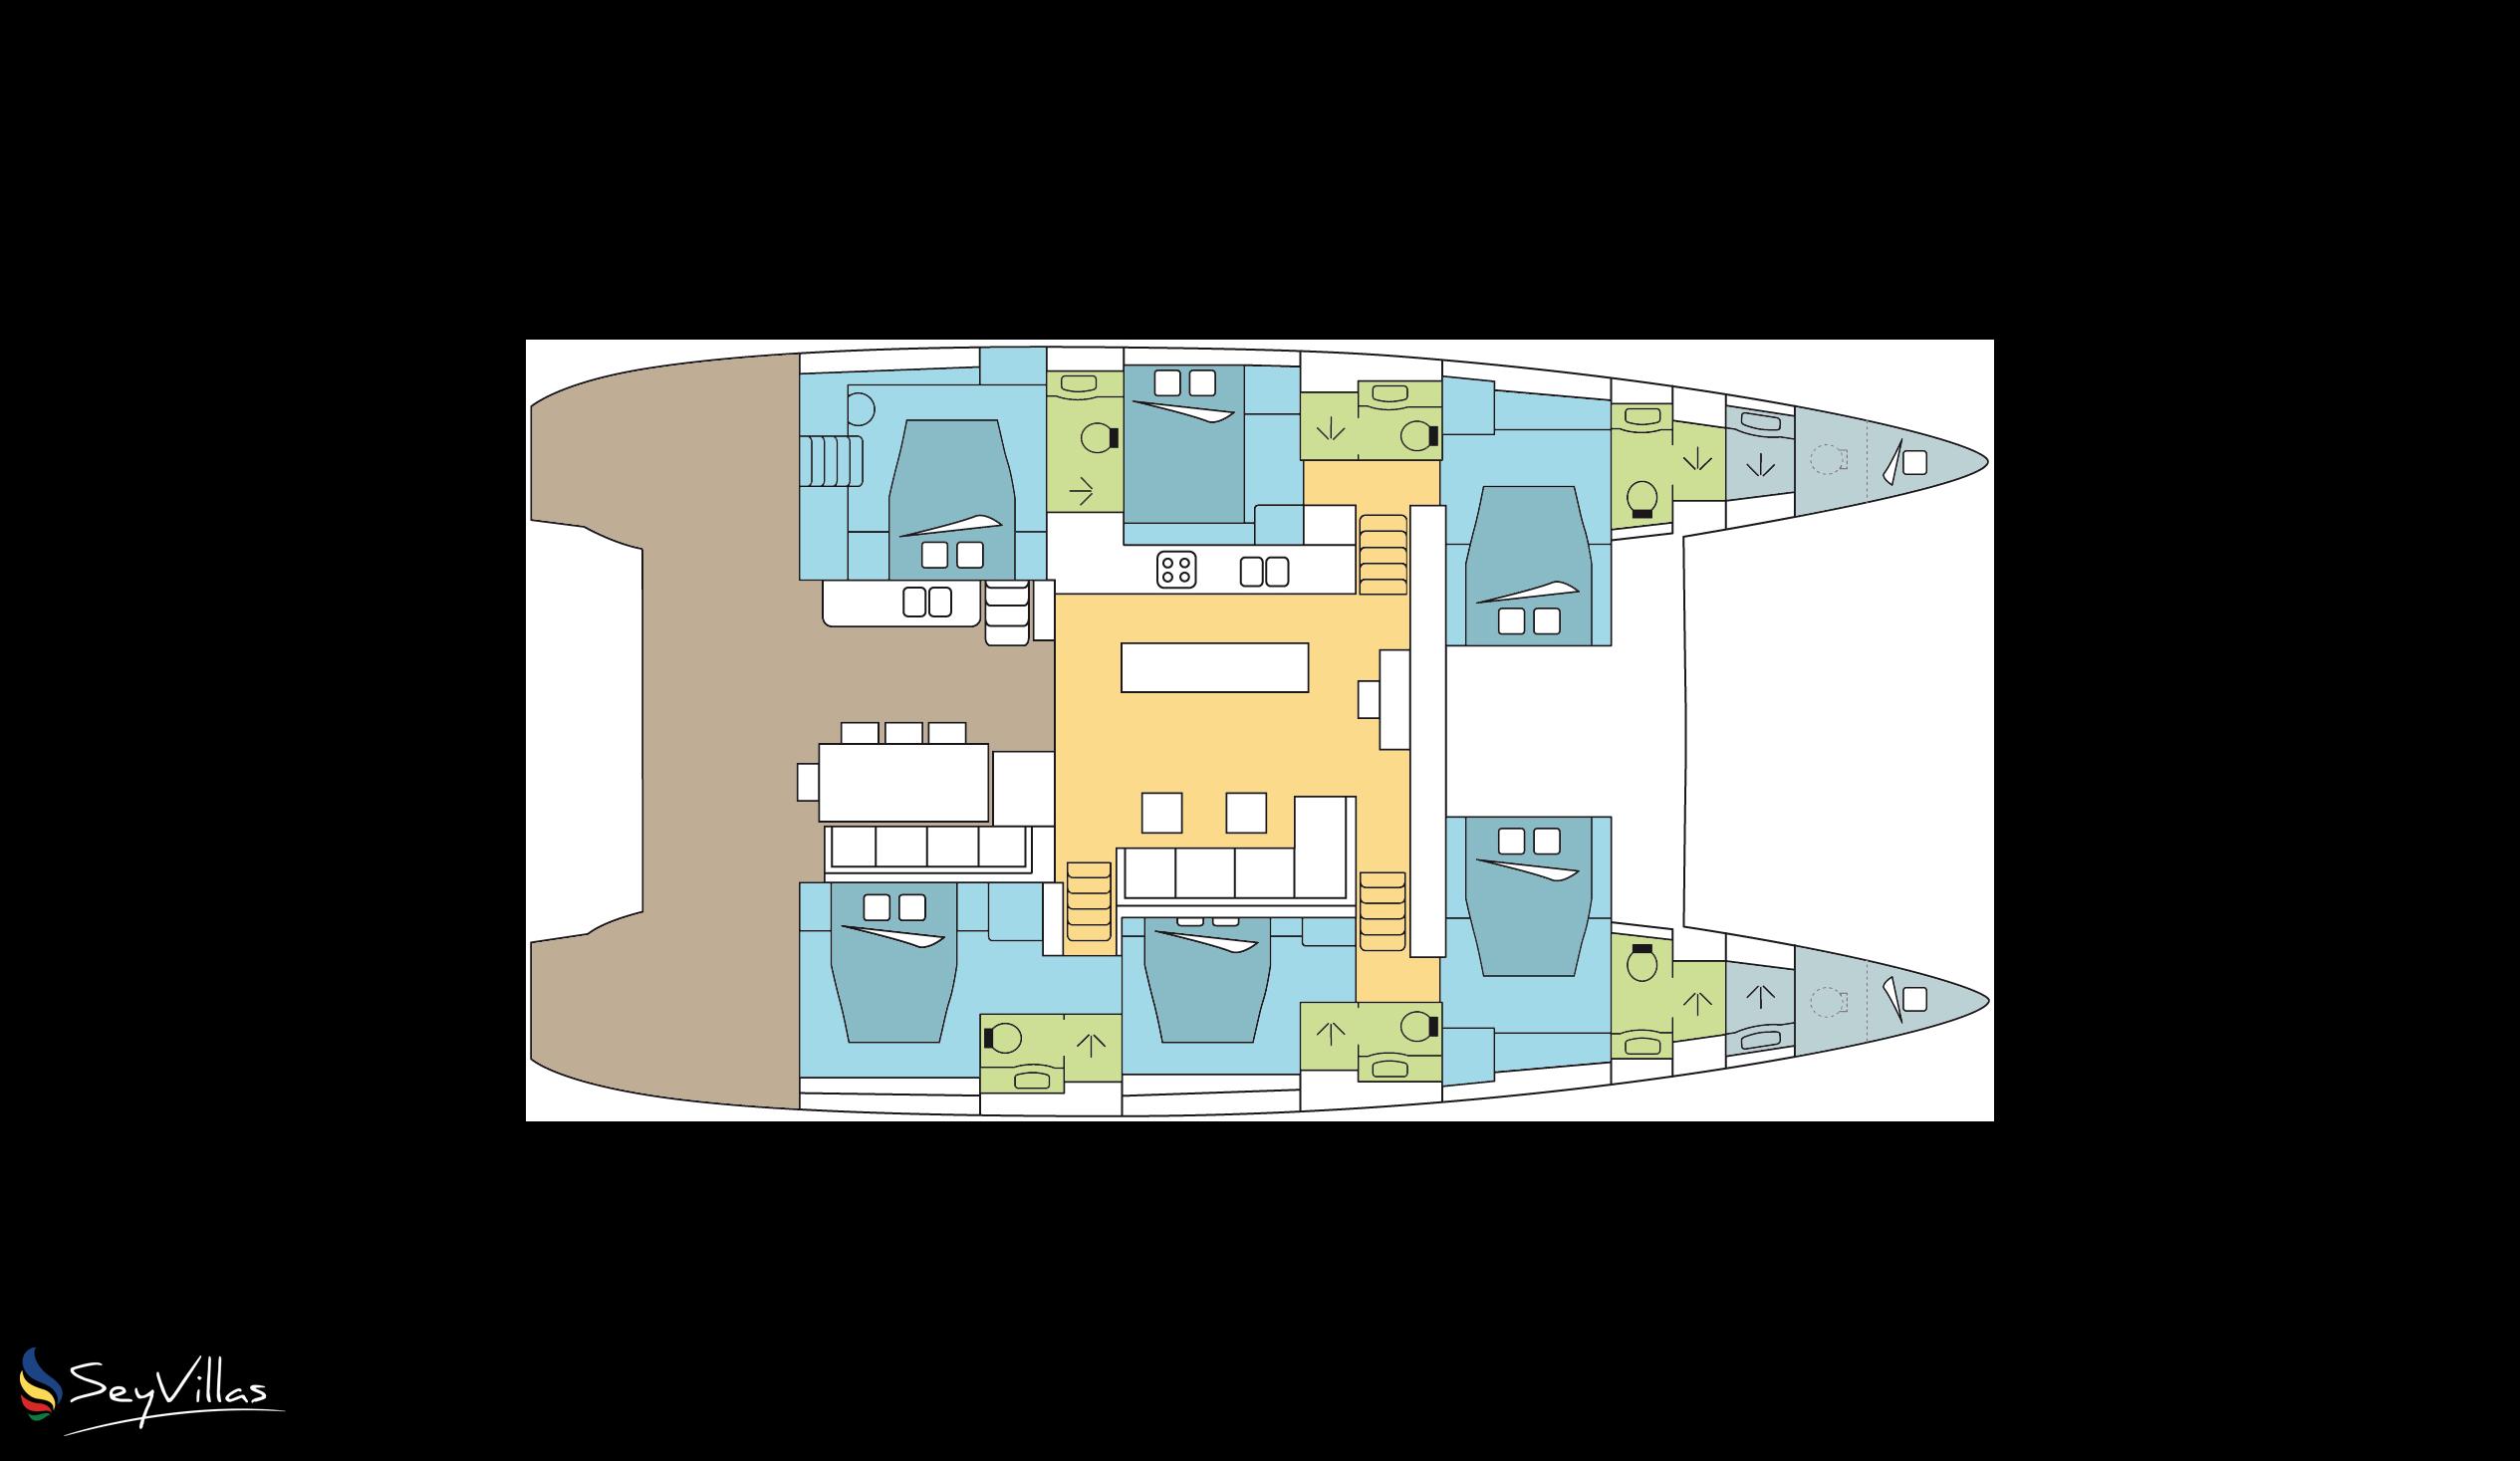 Foto 15: Dream Yacht Praslin Dream Premium - Aussenbereich - Seychellen (Seychellen)